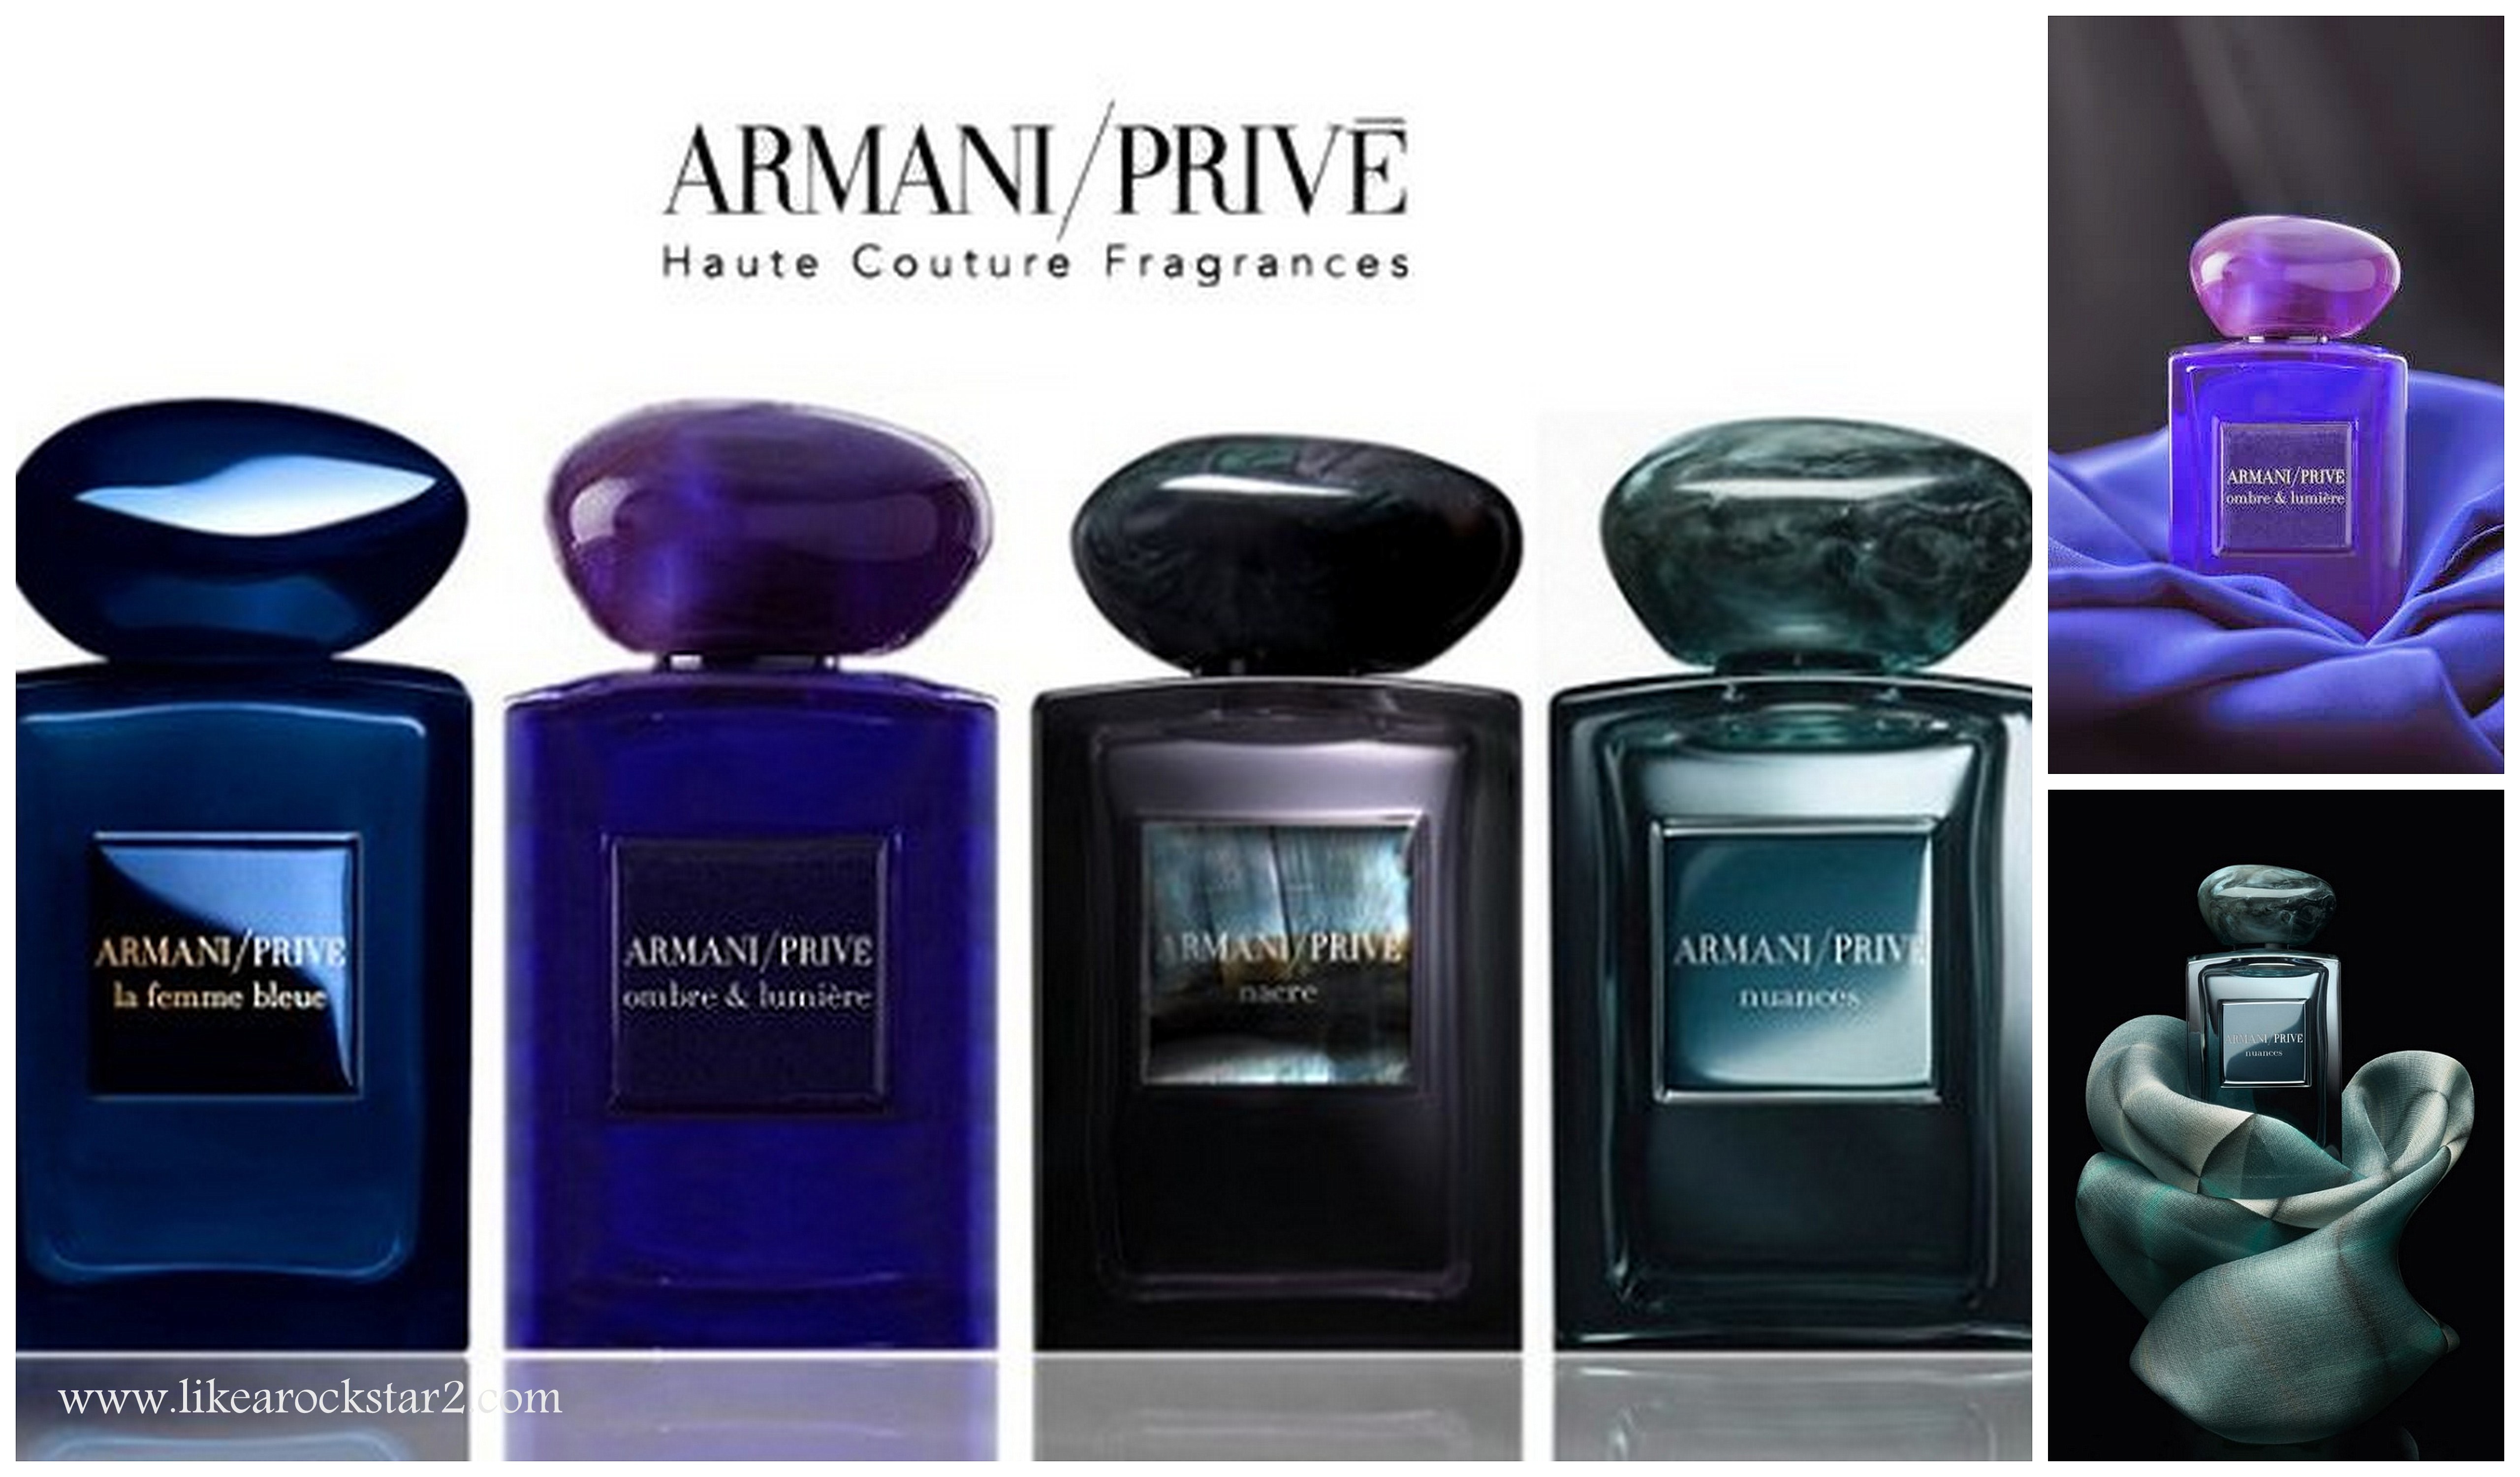 Armani prive Haute Couture Fragrances